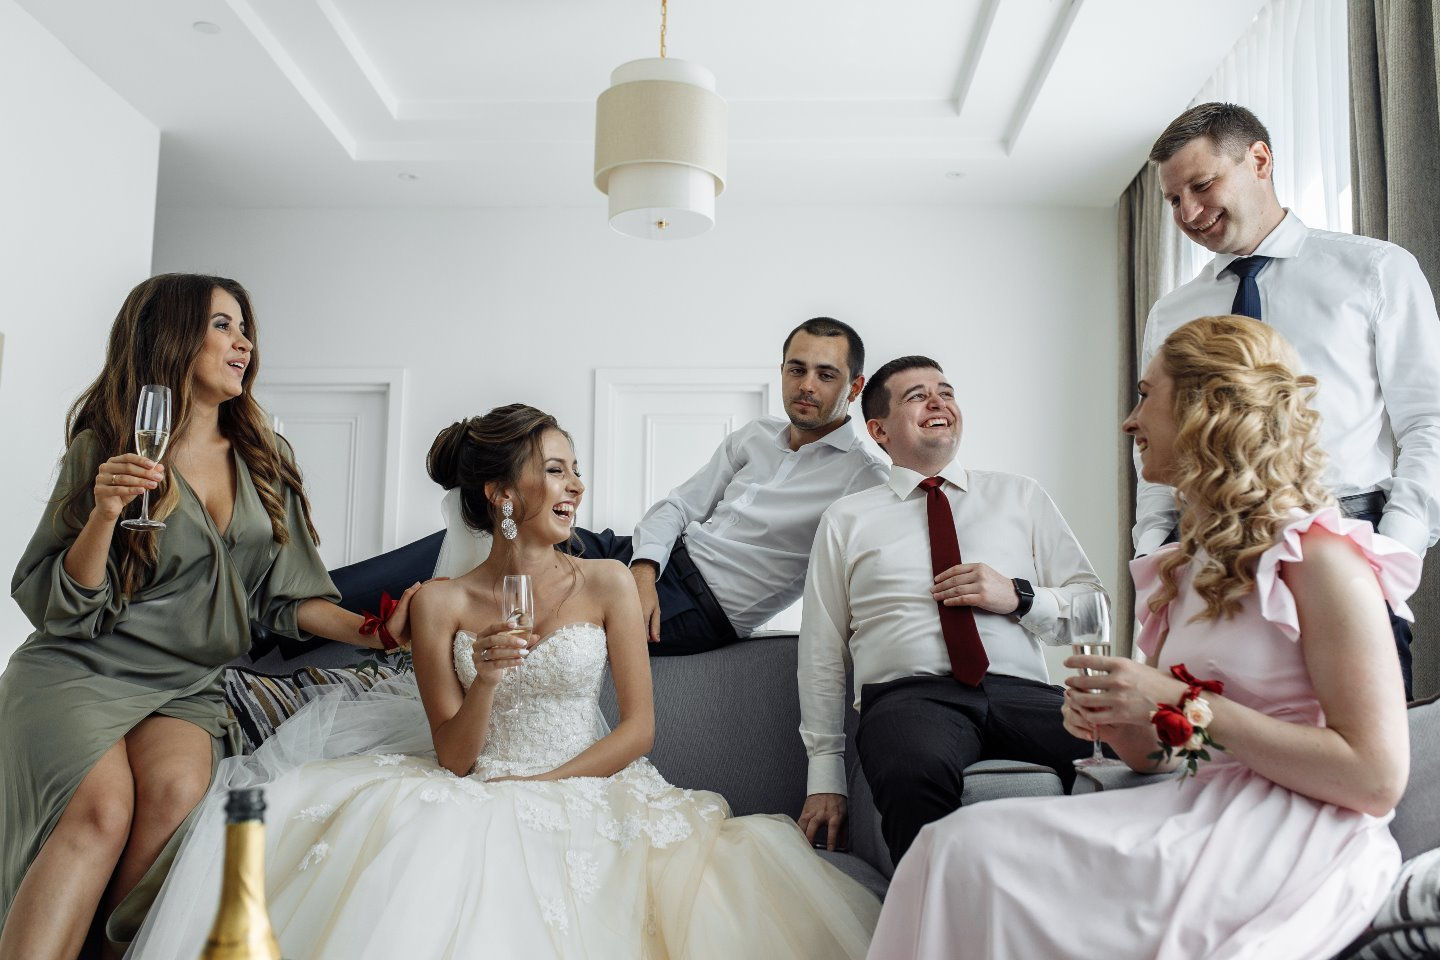 Свадьба измена мужу. Измена с подружками невесты. Свадьба анонс. Brazzers перед свадьбой с фотограф.